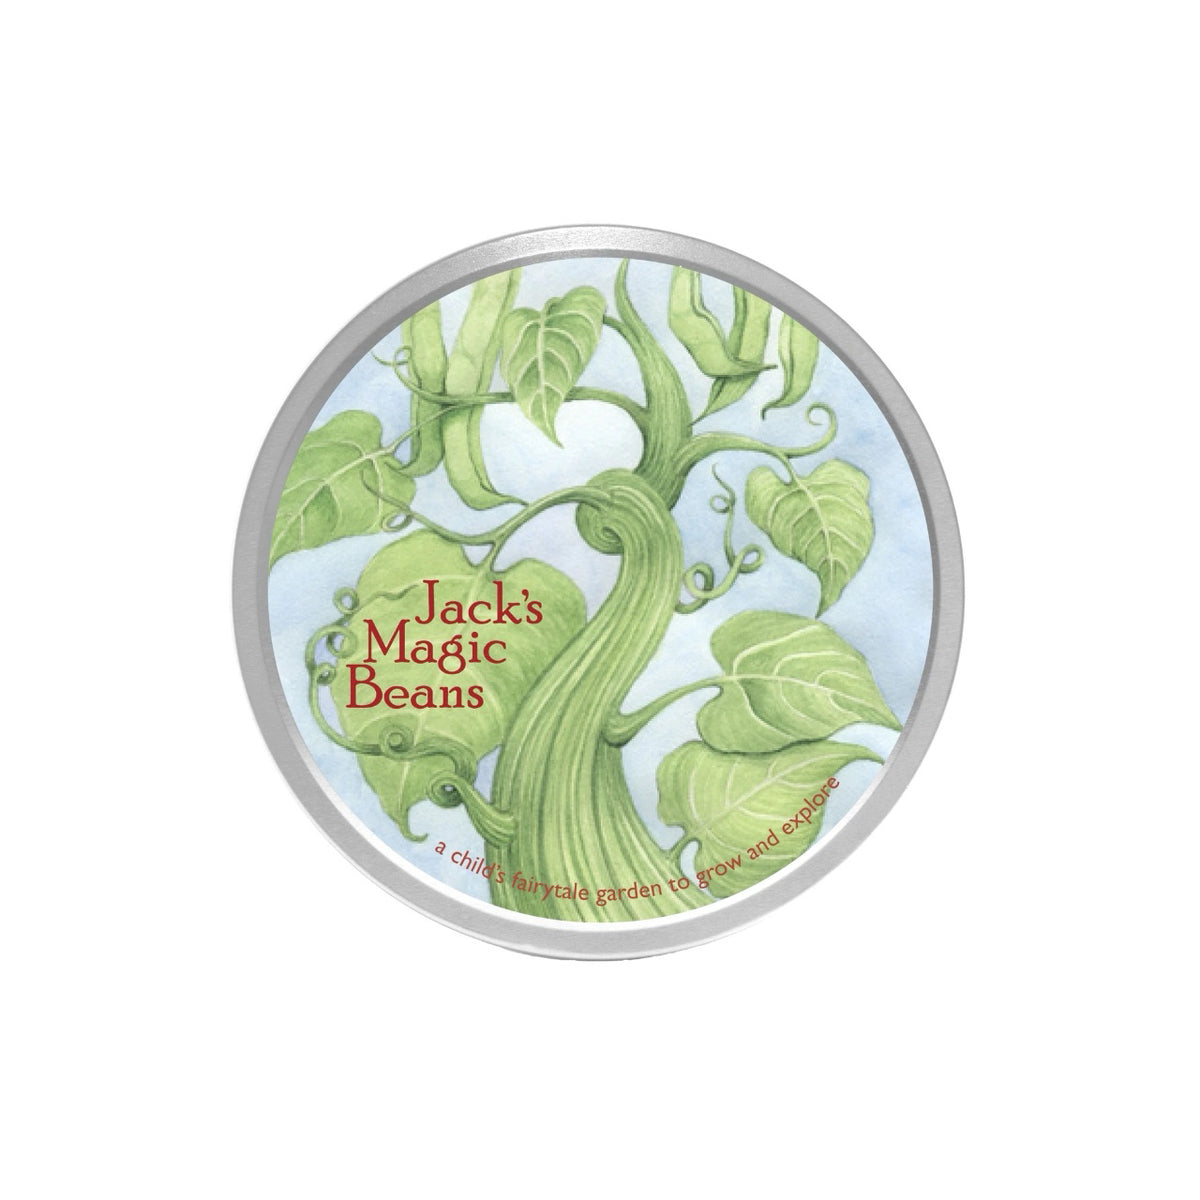 Fairytale Garden- Jack's Magic Beans